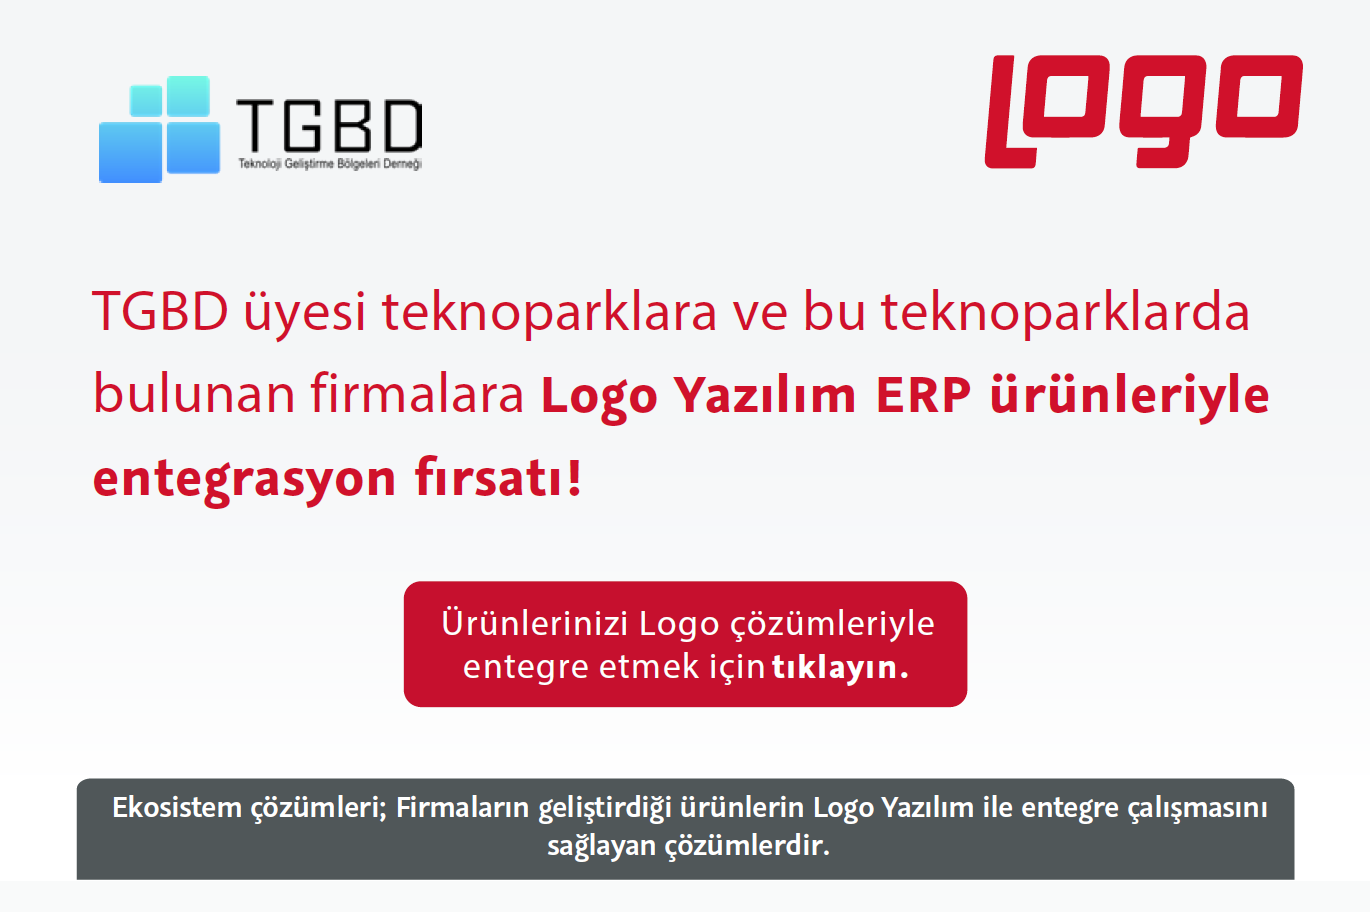 Logo Yazılım ERP Ürünleriyle Entegrasyon Fırsatı Sunuyor!